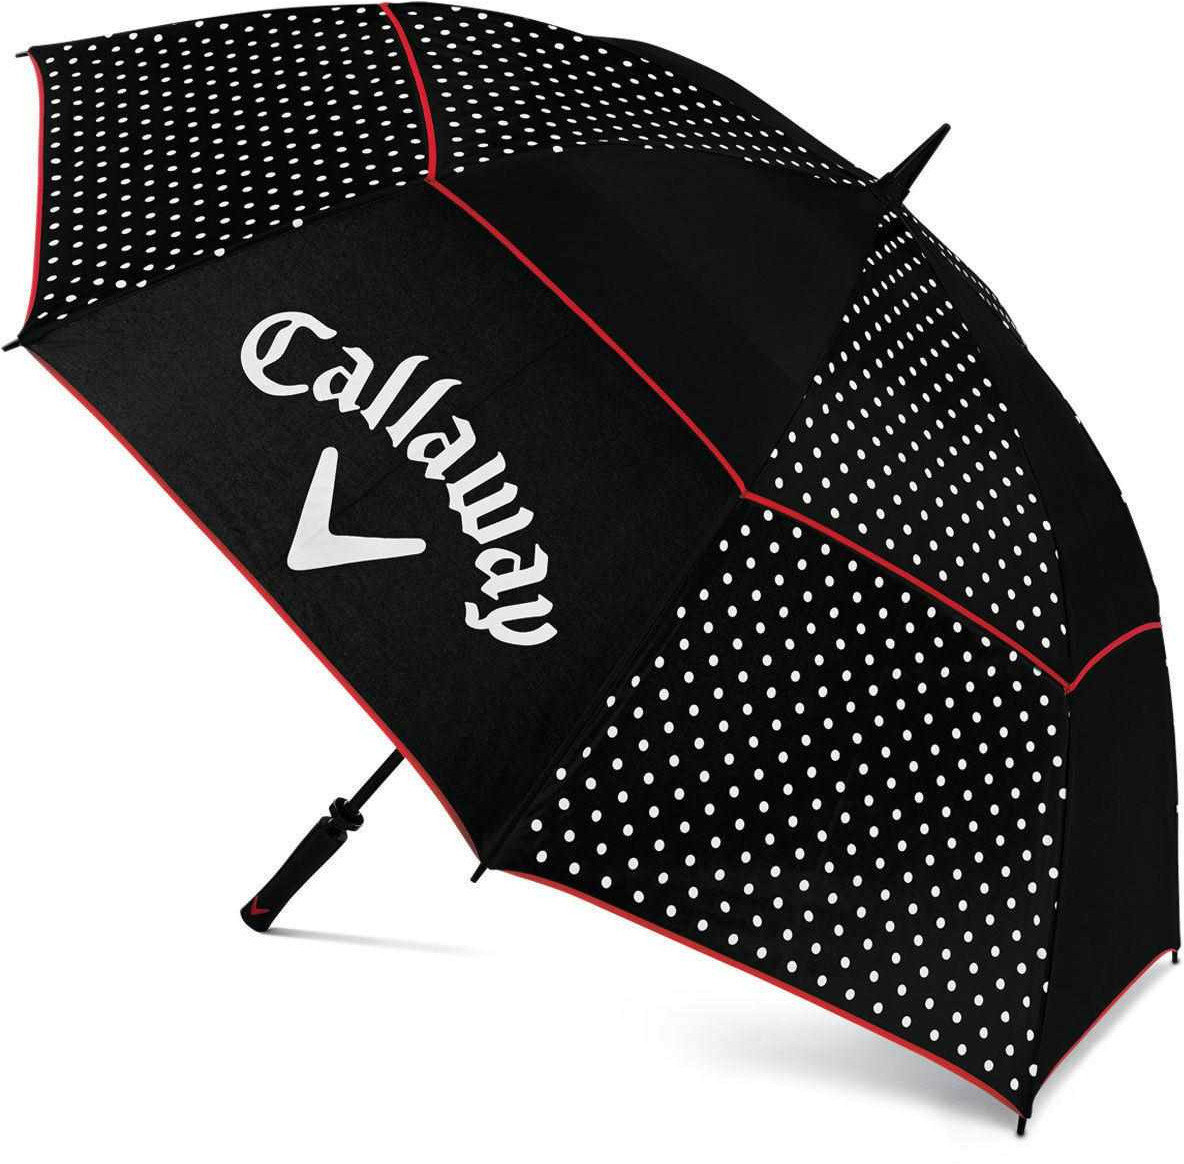 Regenschirm Callaway Umbrella Blk/Wht